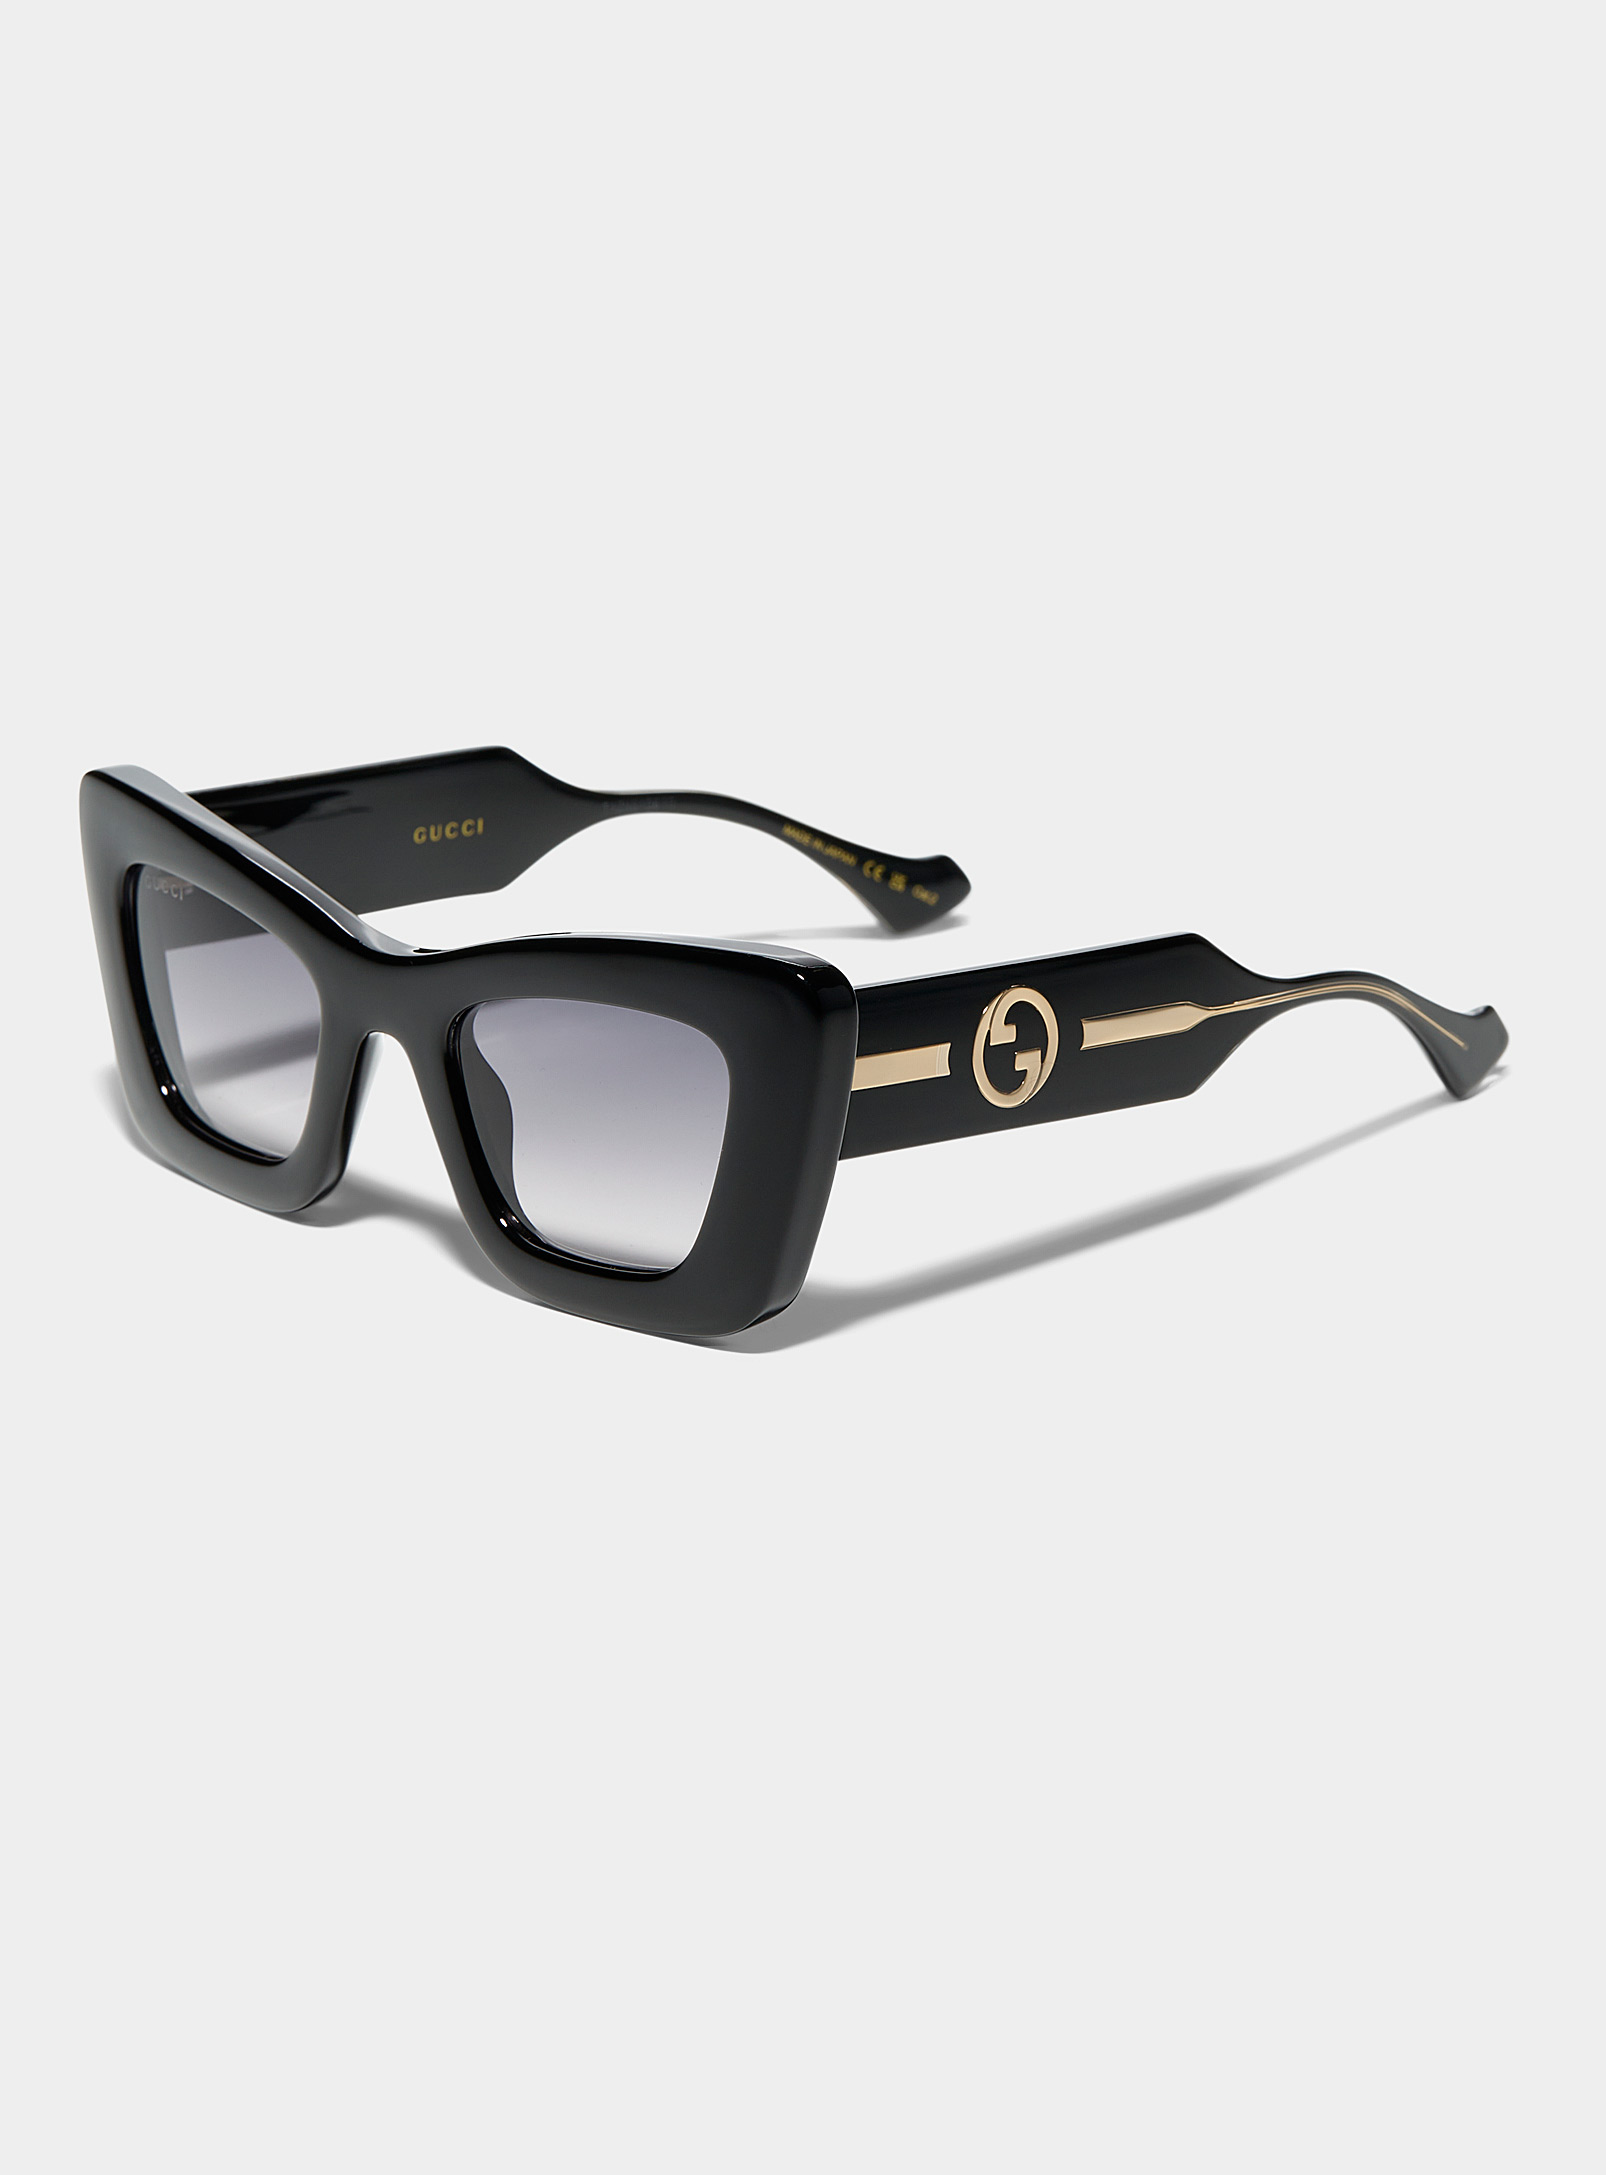 Gucci - Women's Massive cat-eye sunglasses